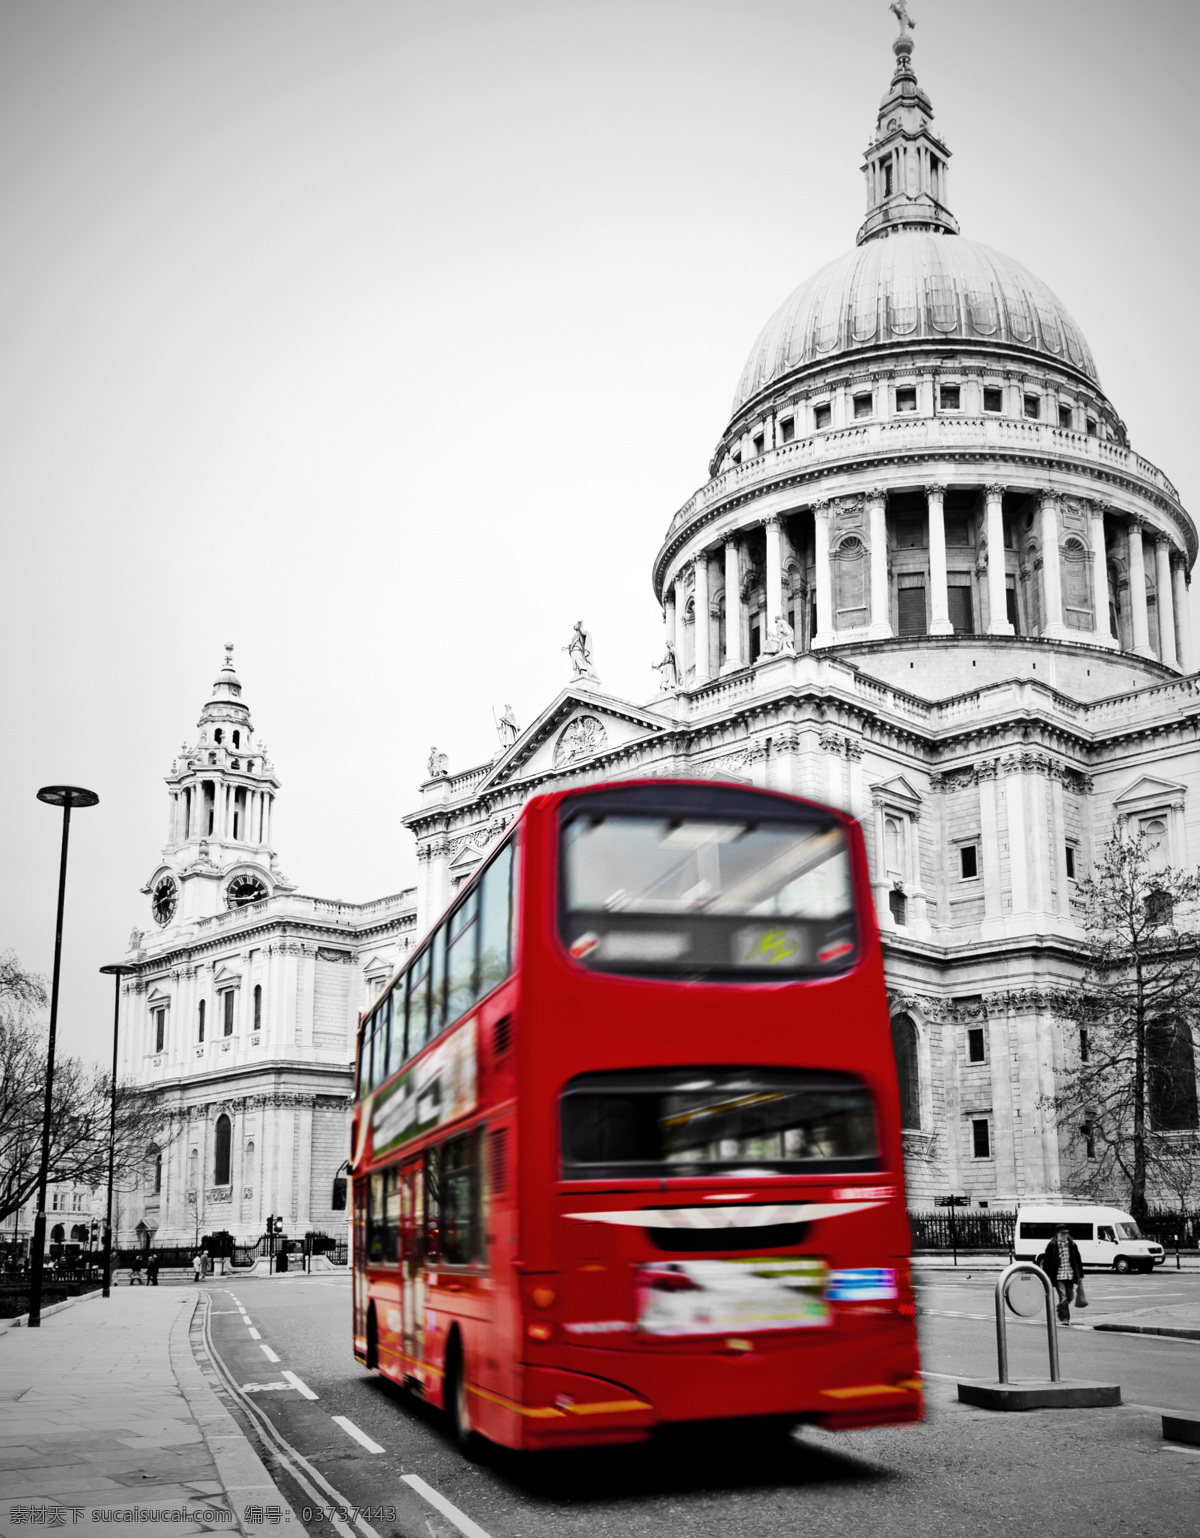 伦敦街头 公交巴士 公交车 双层巴士 英国建筑 英国风景 英国旅游 英伦风情 景观设计 环境设计